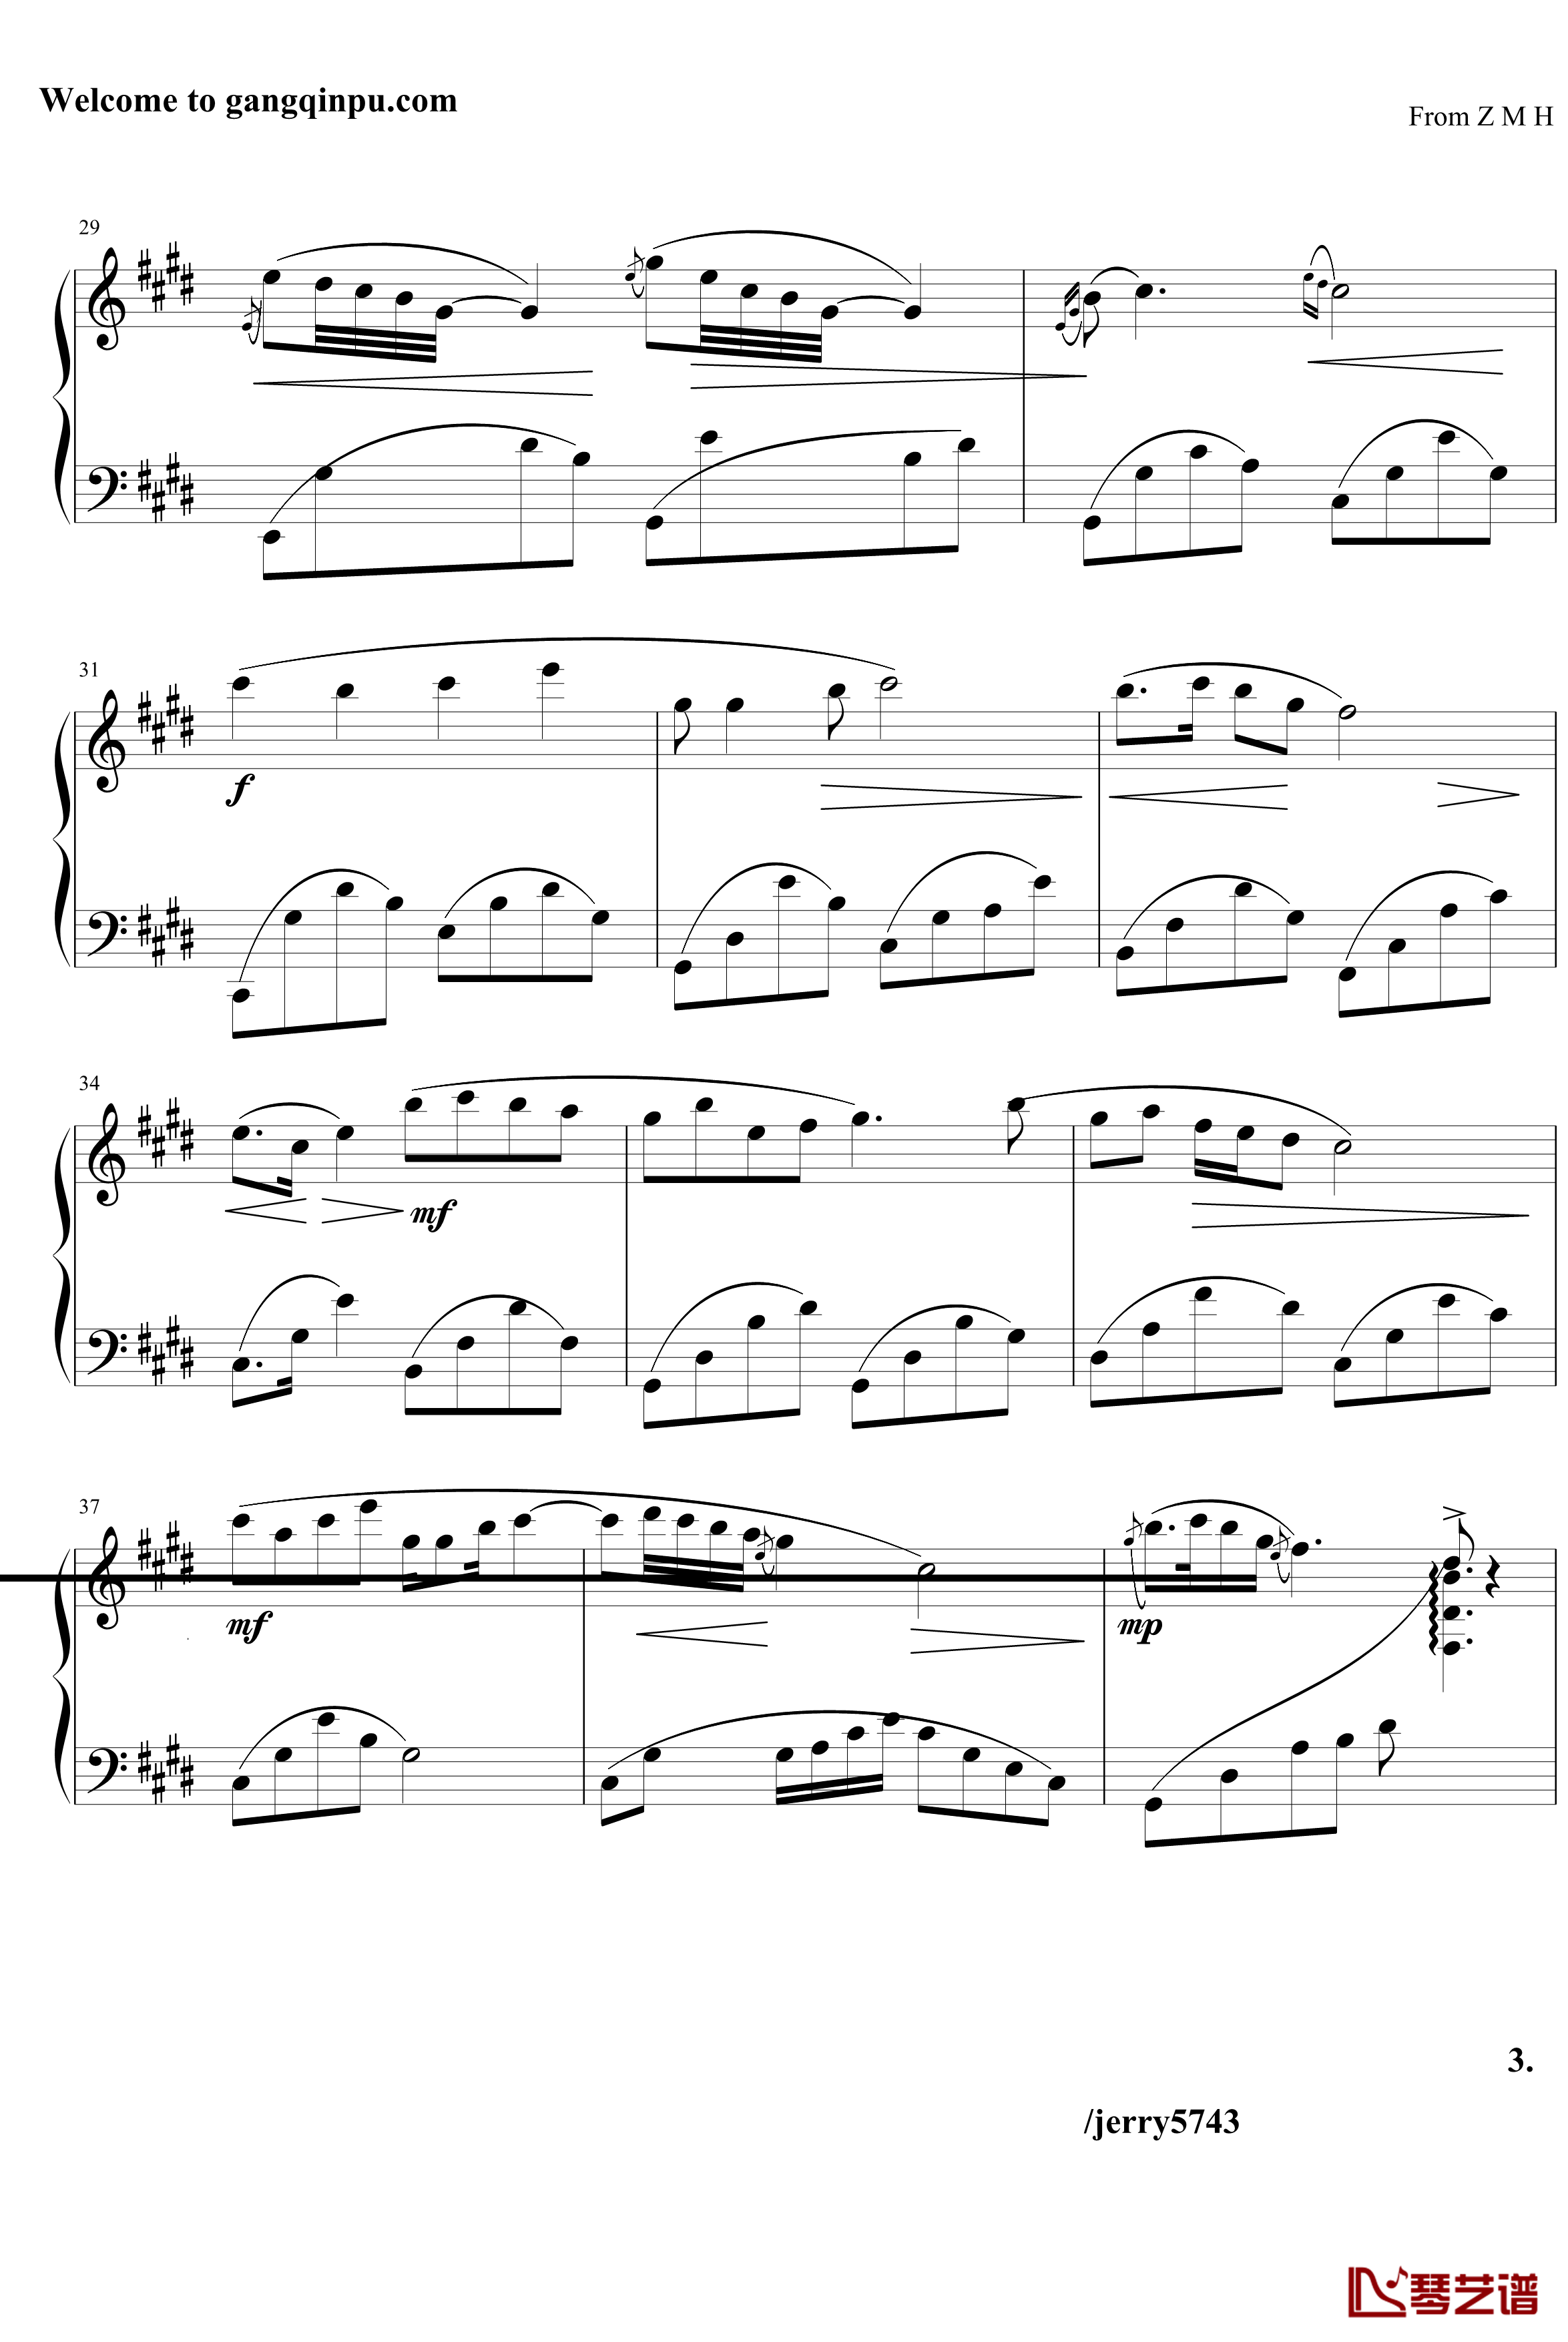 夜曲Op7.6钢琴谱-中西式-jerry57433